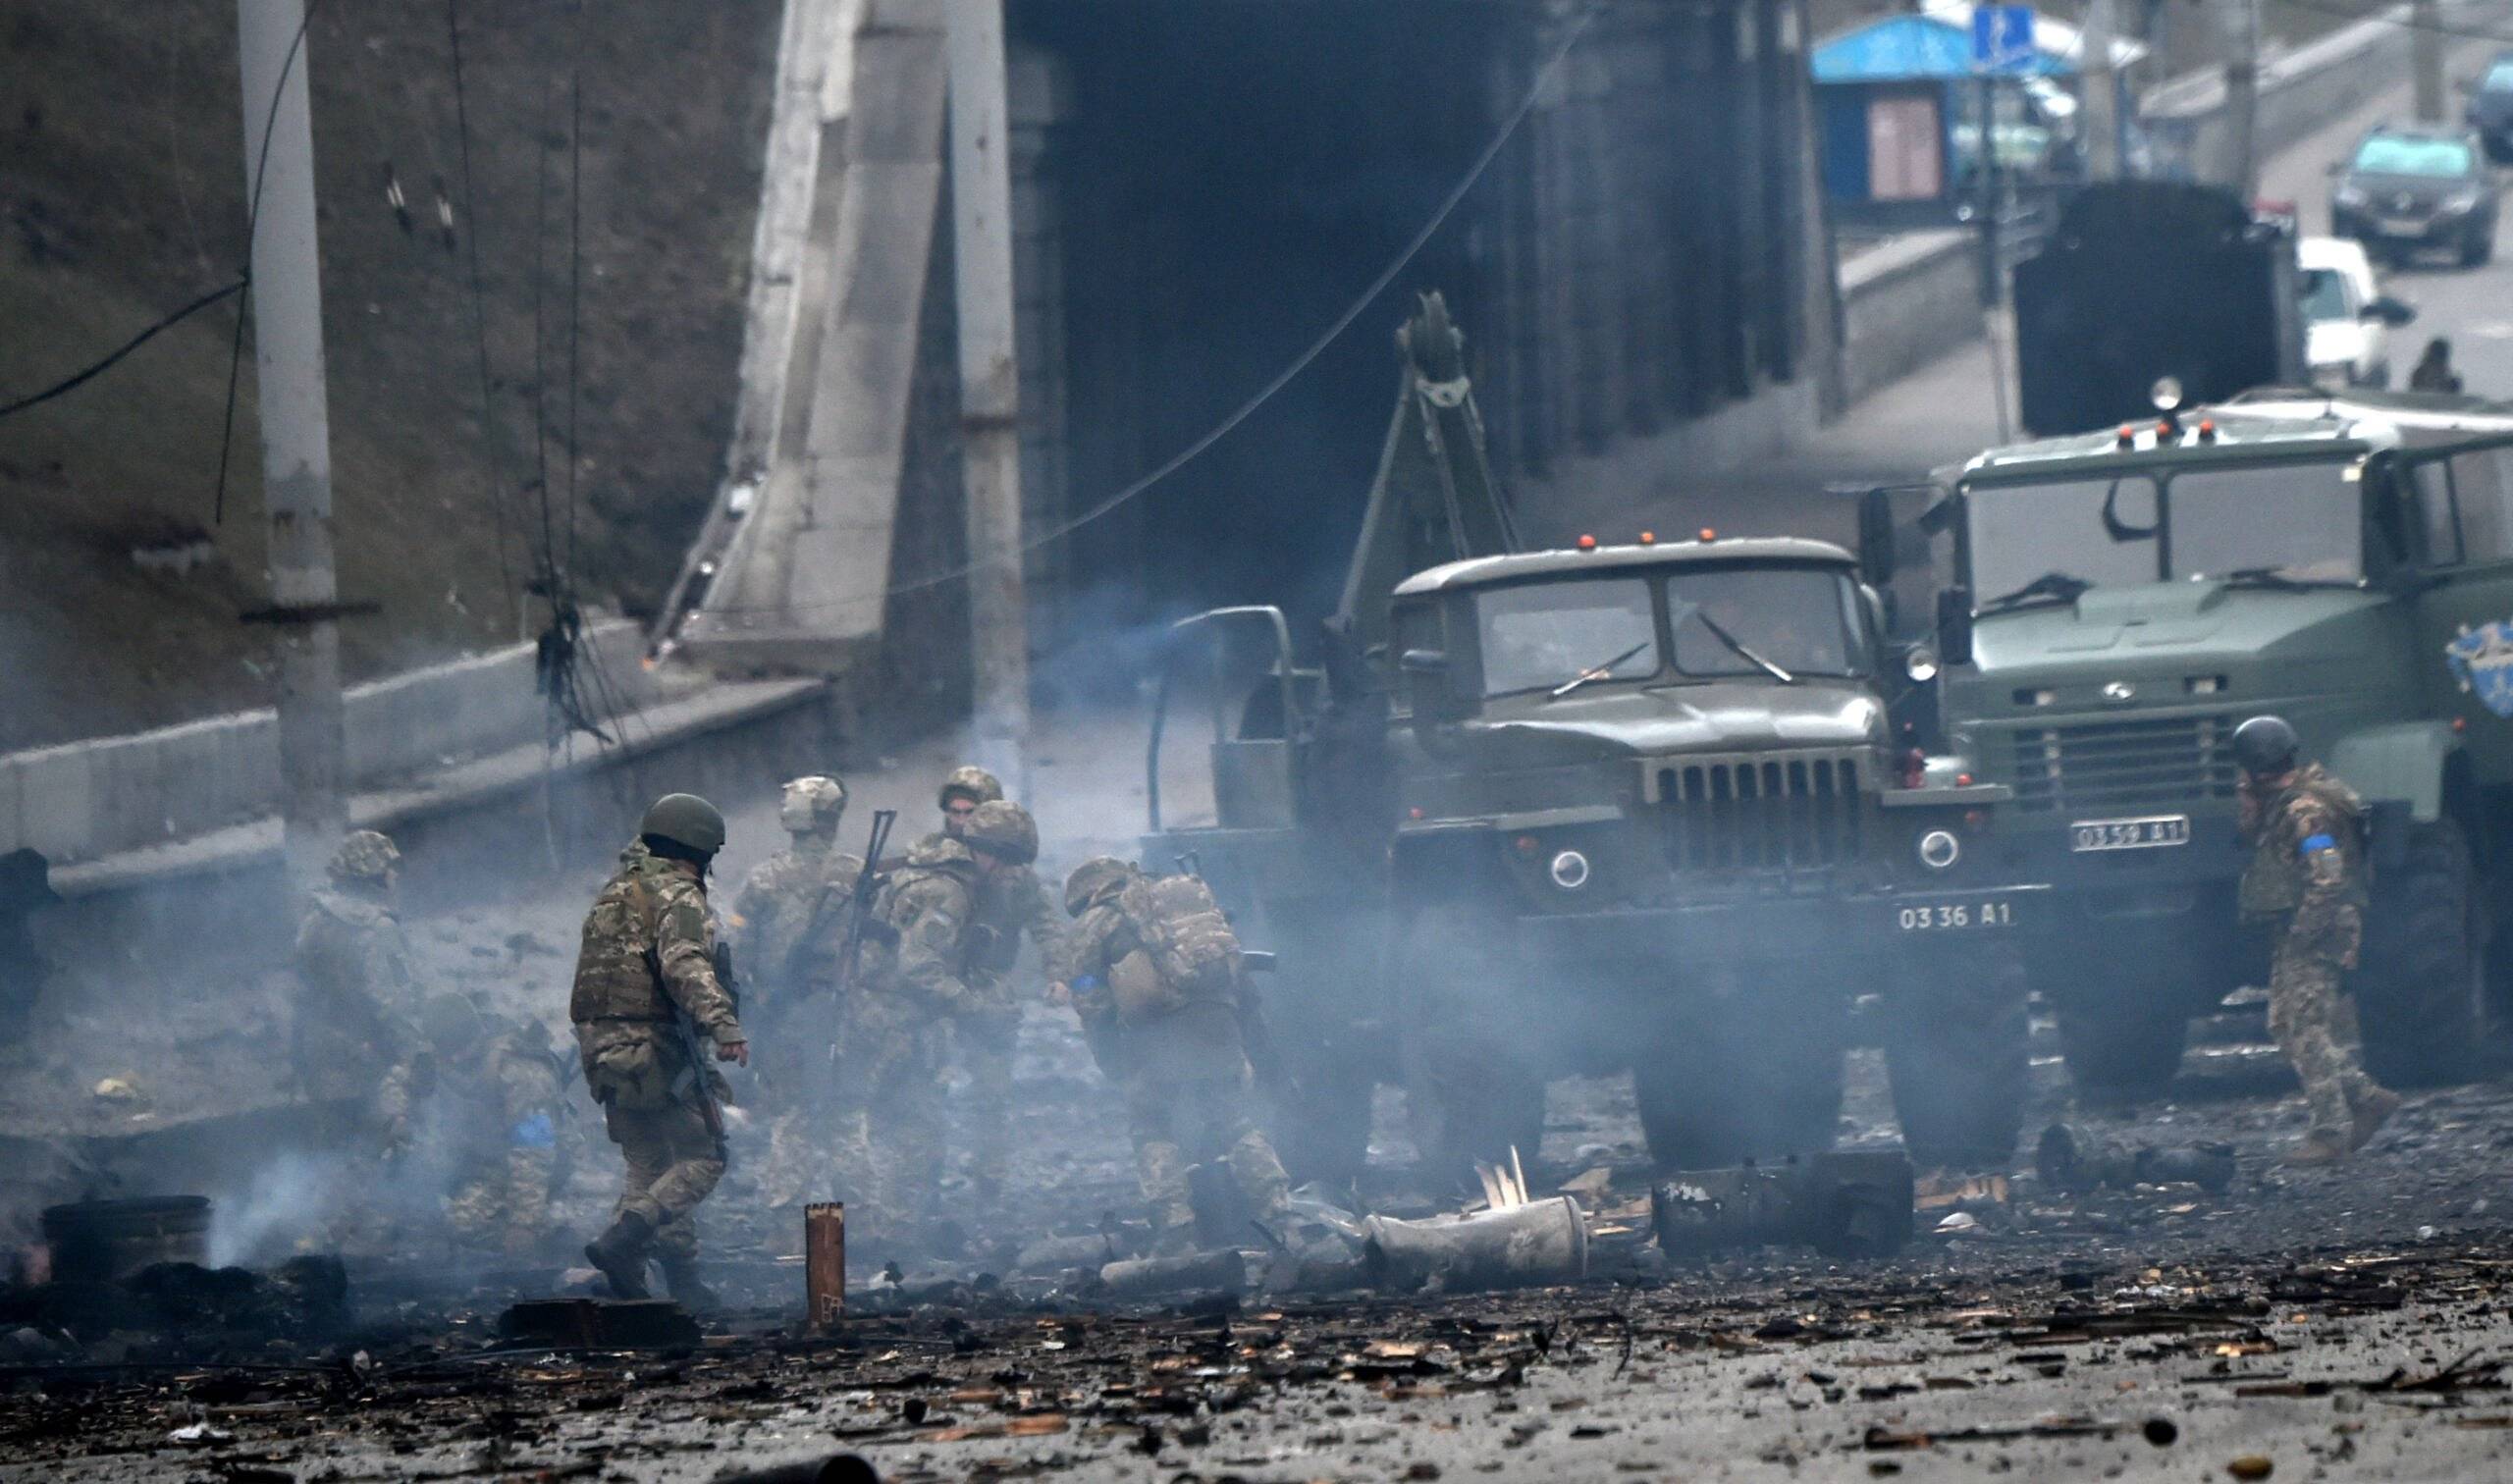 Żołnierze ukraińscy zbierają niewybuchy po walce z rosyjskim oddziałem szturmowym w Kijowie